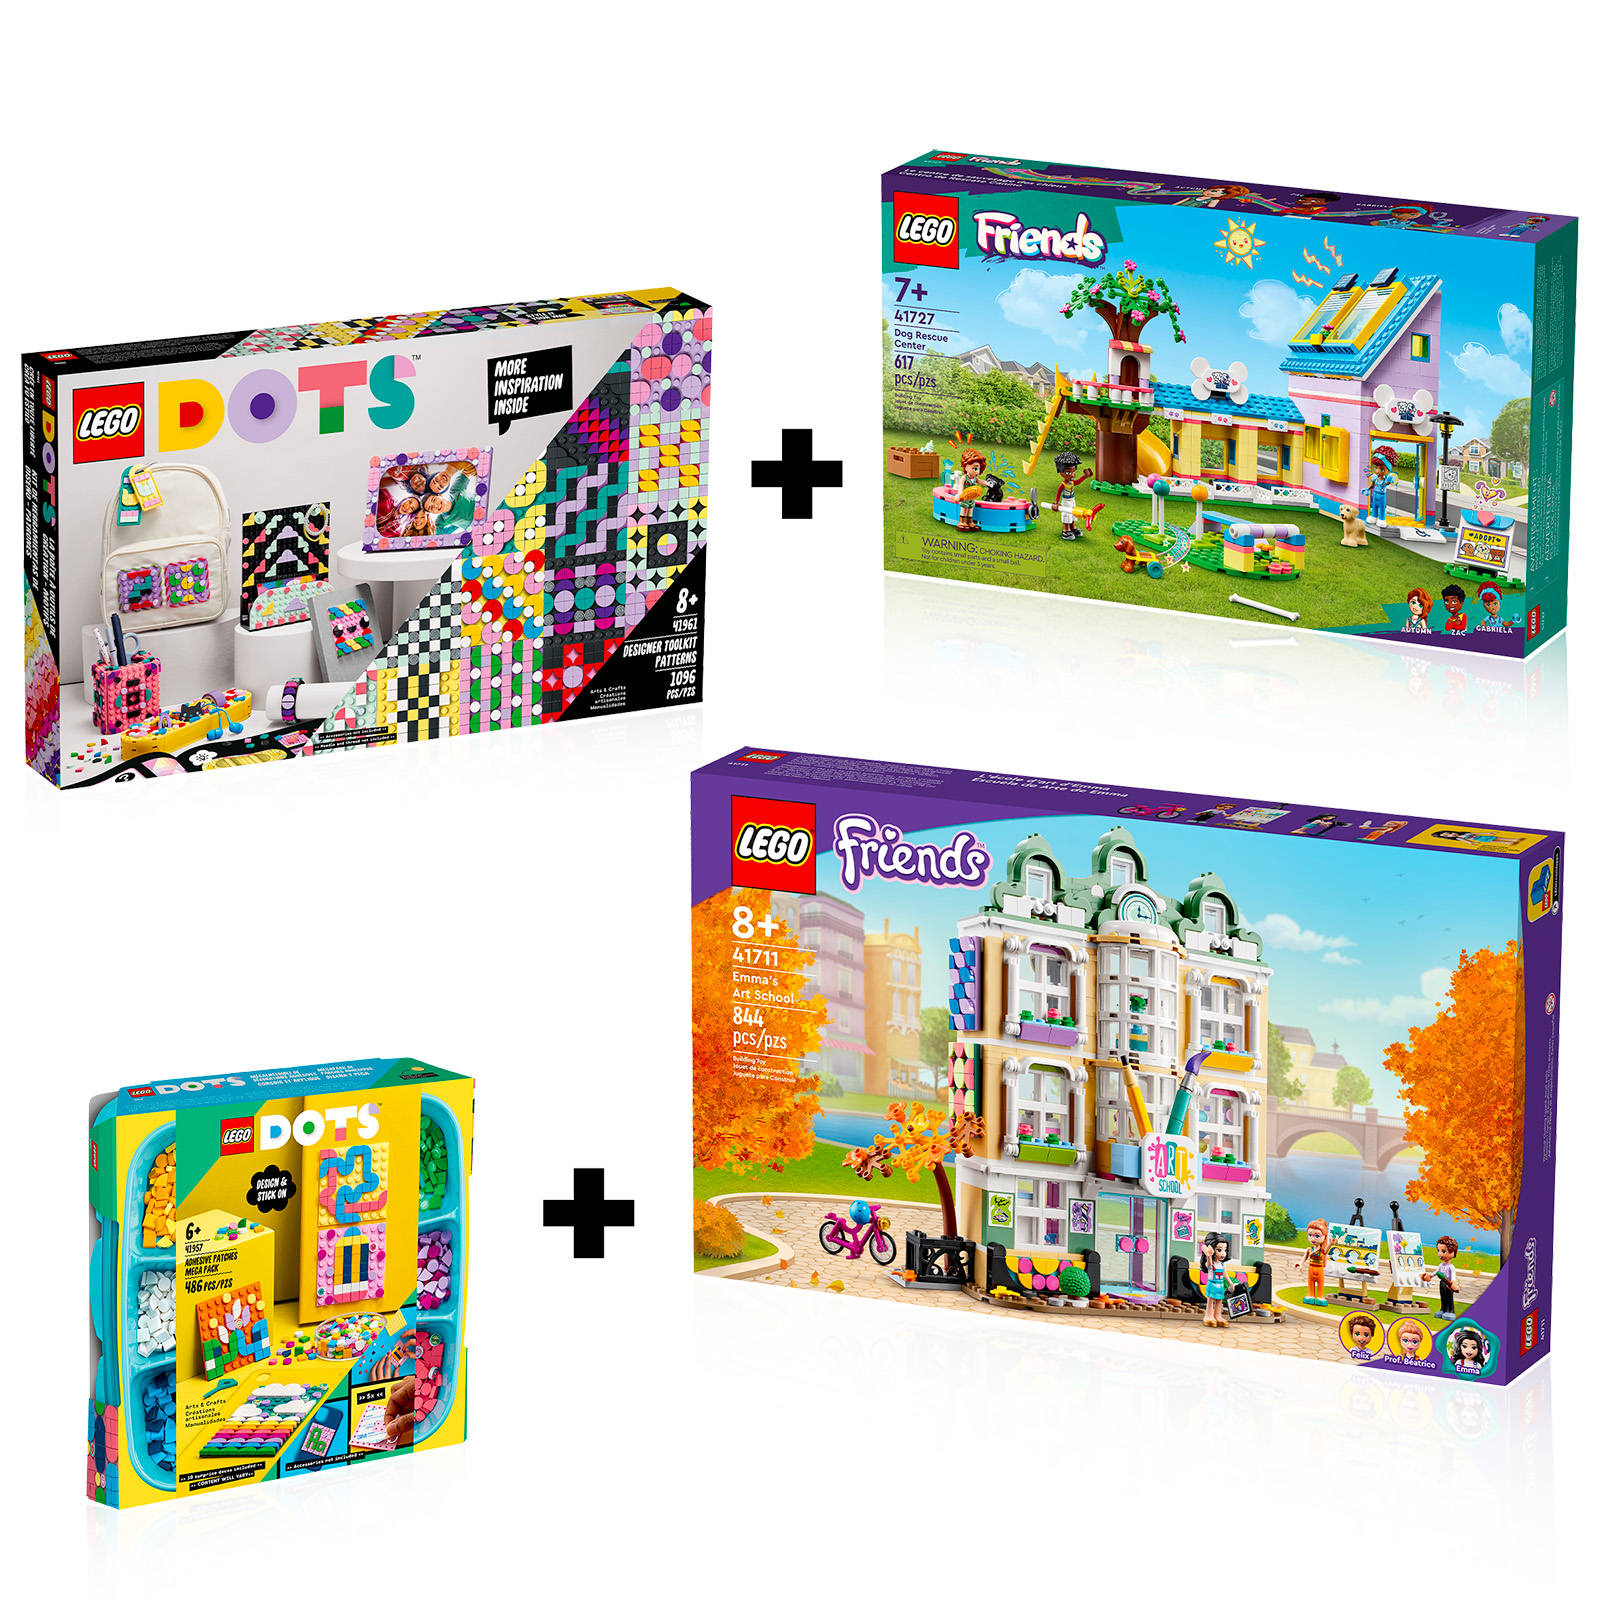 LEGO DOTS : déstockage en cours sur la boutique officielle en ligne